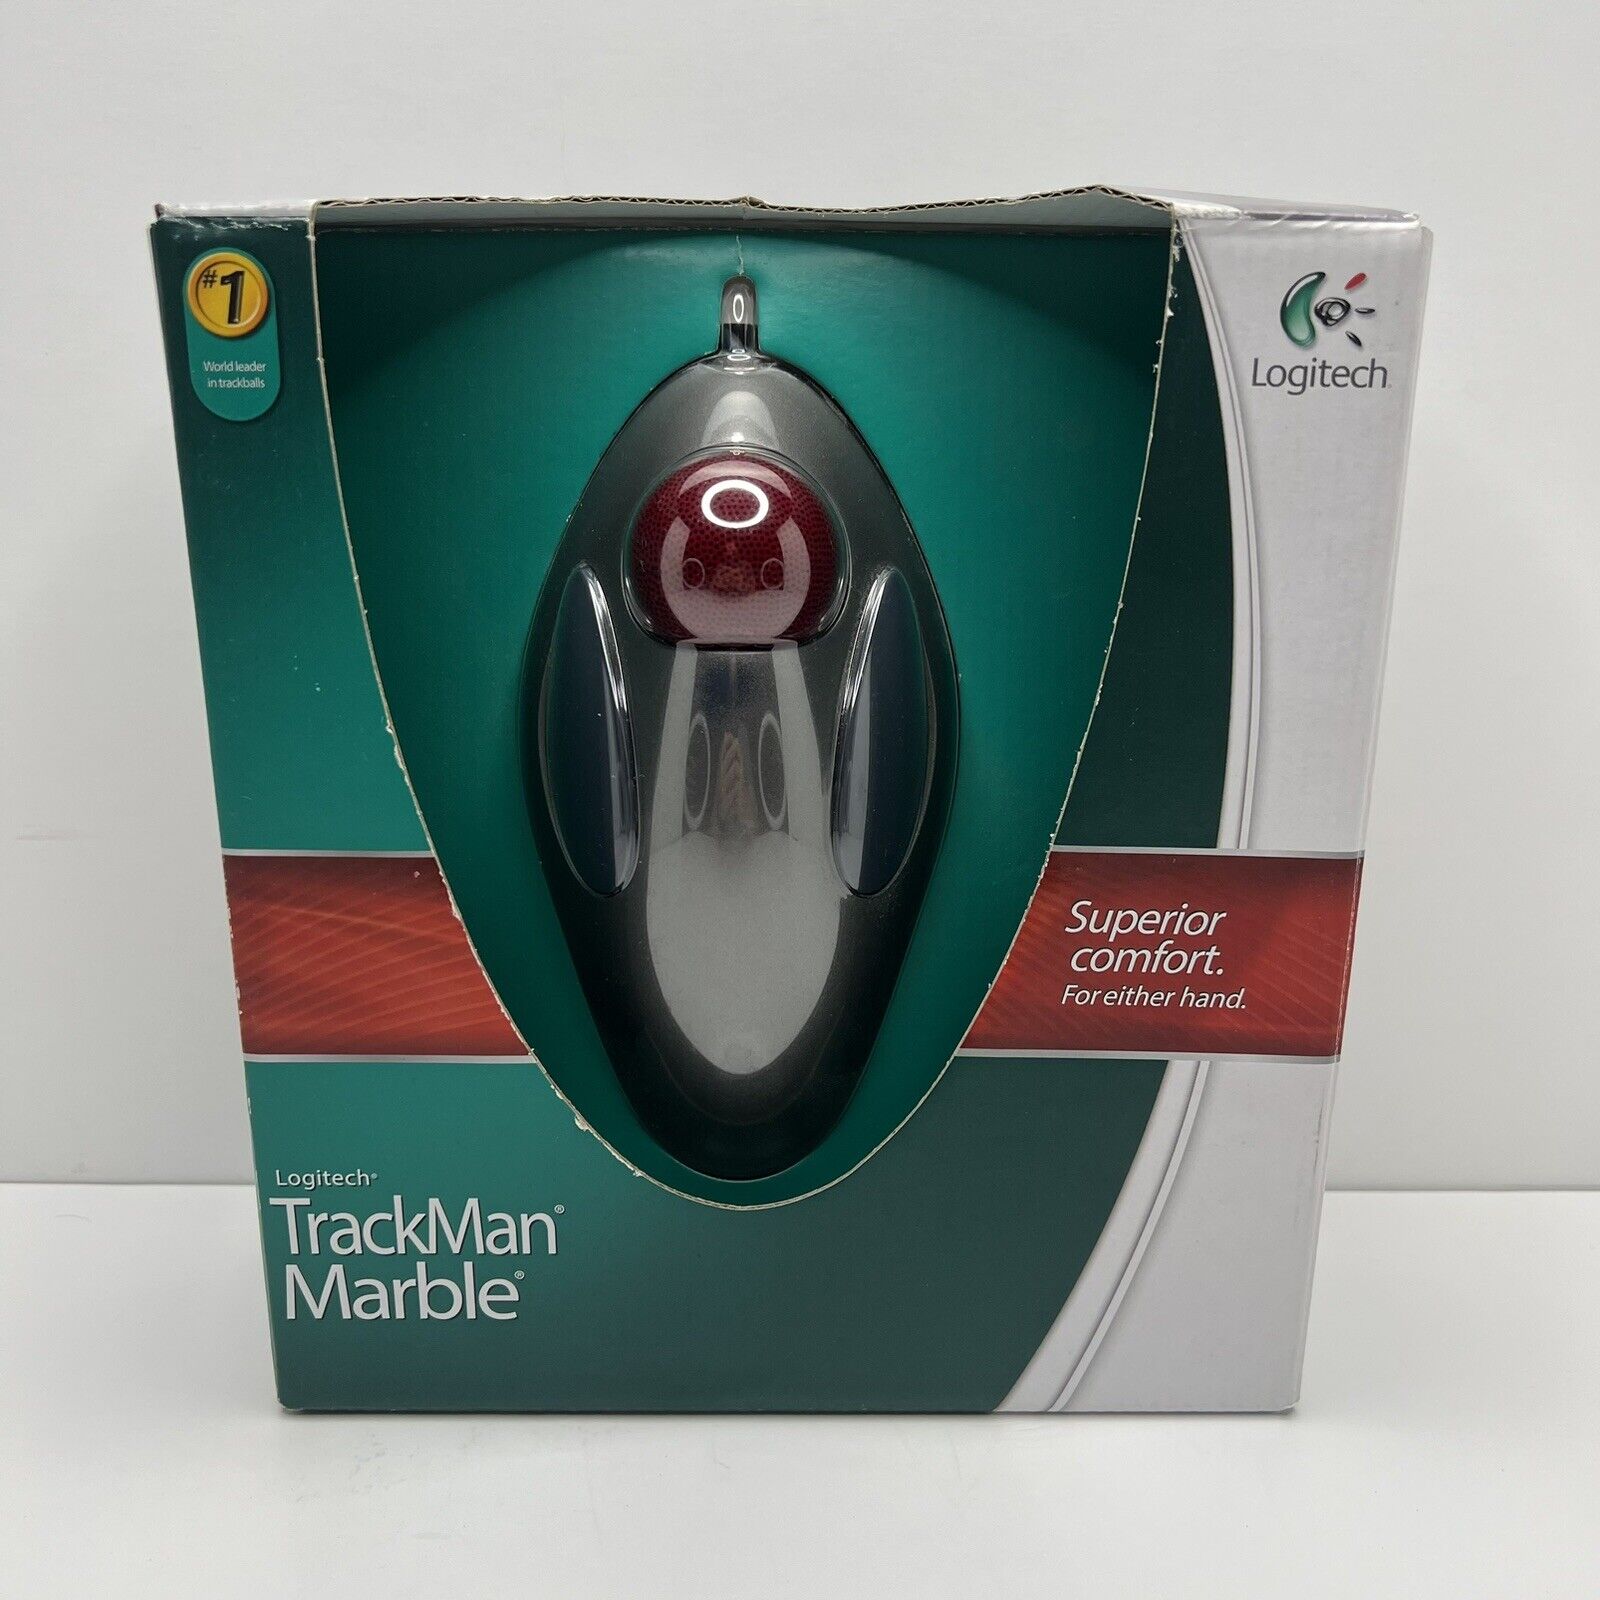 Logitech TrackMan Marble Mouse 910-000806 - Vintage Open Box